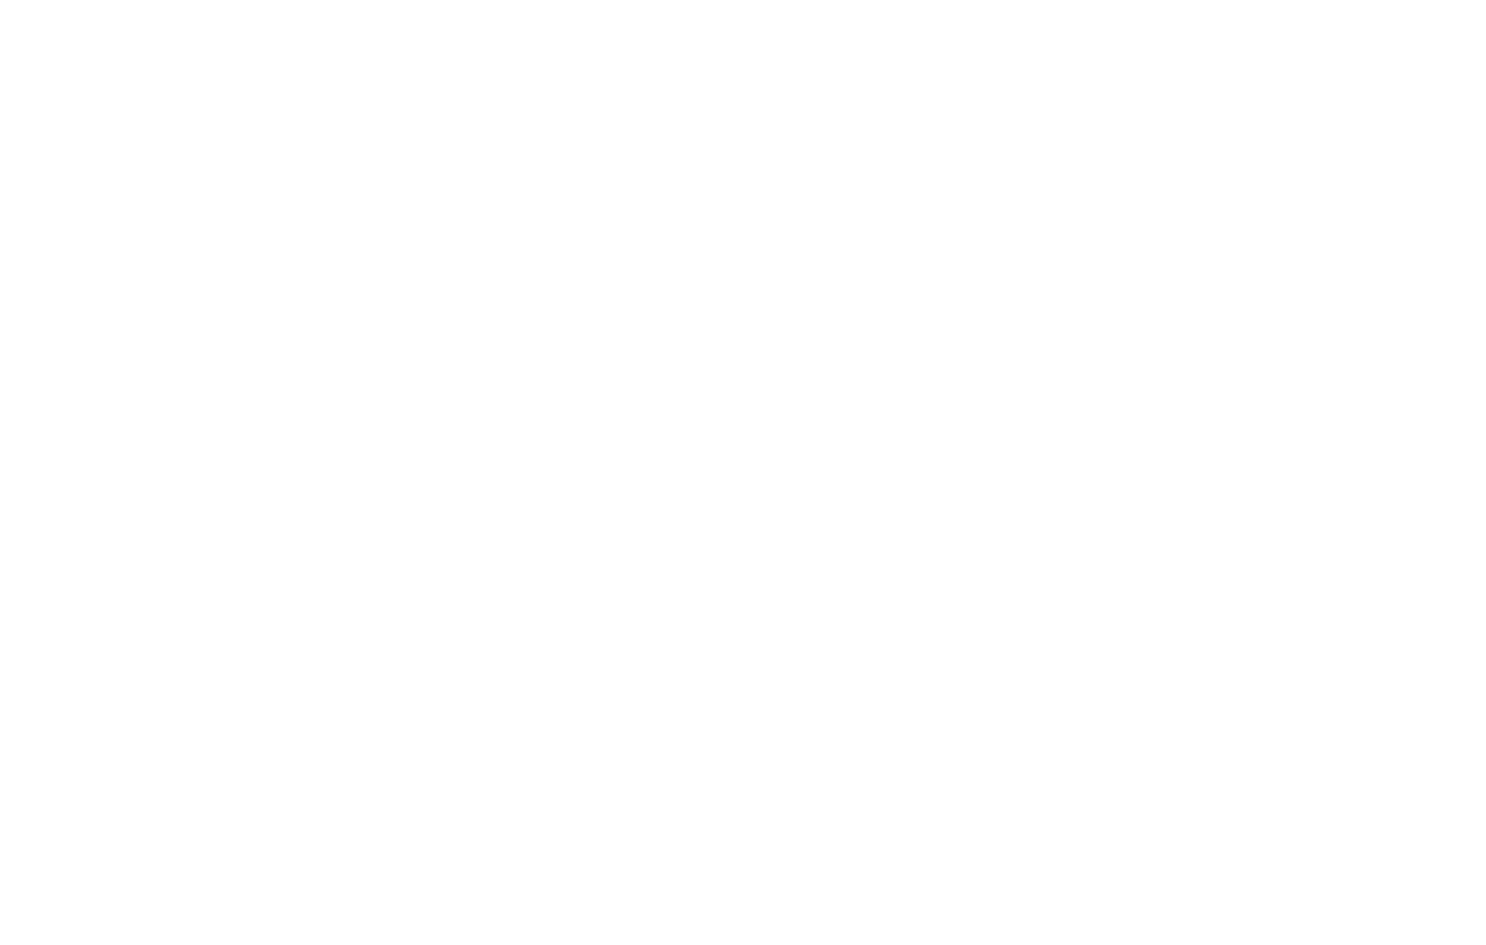 IAA-Insurance Auto Auctions logo pour fonds sombres (PNG transparent)